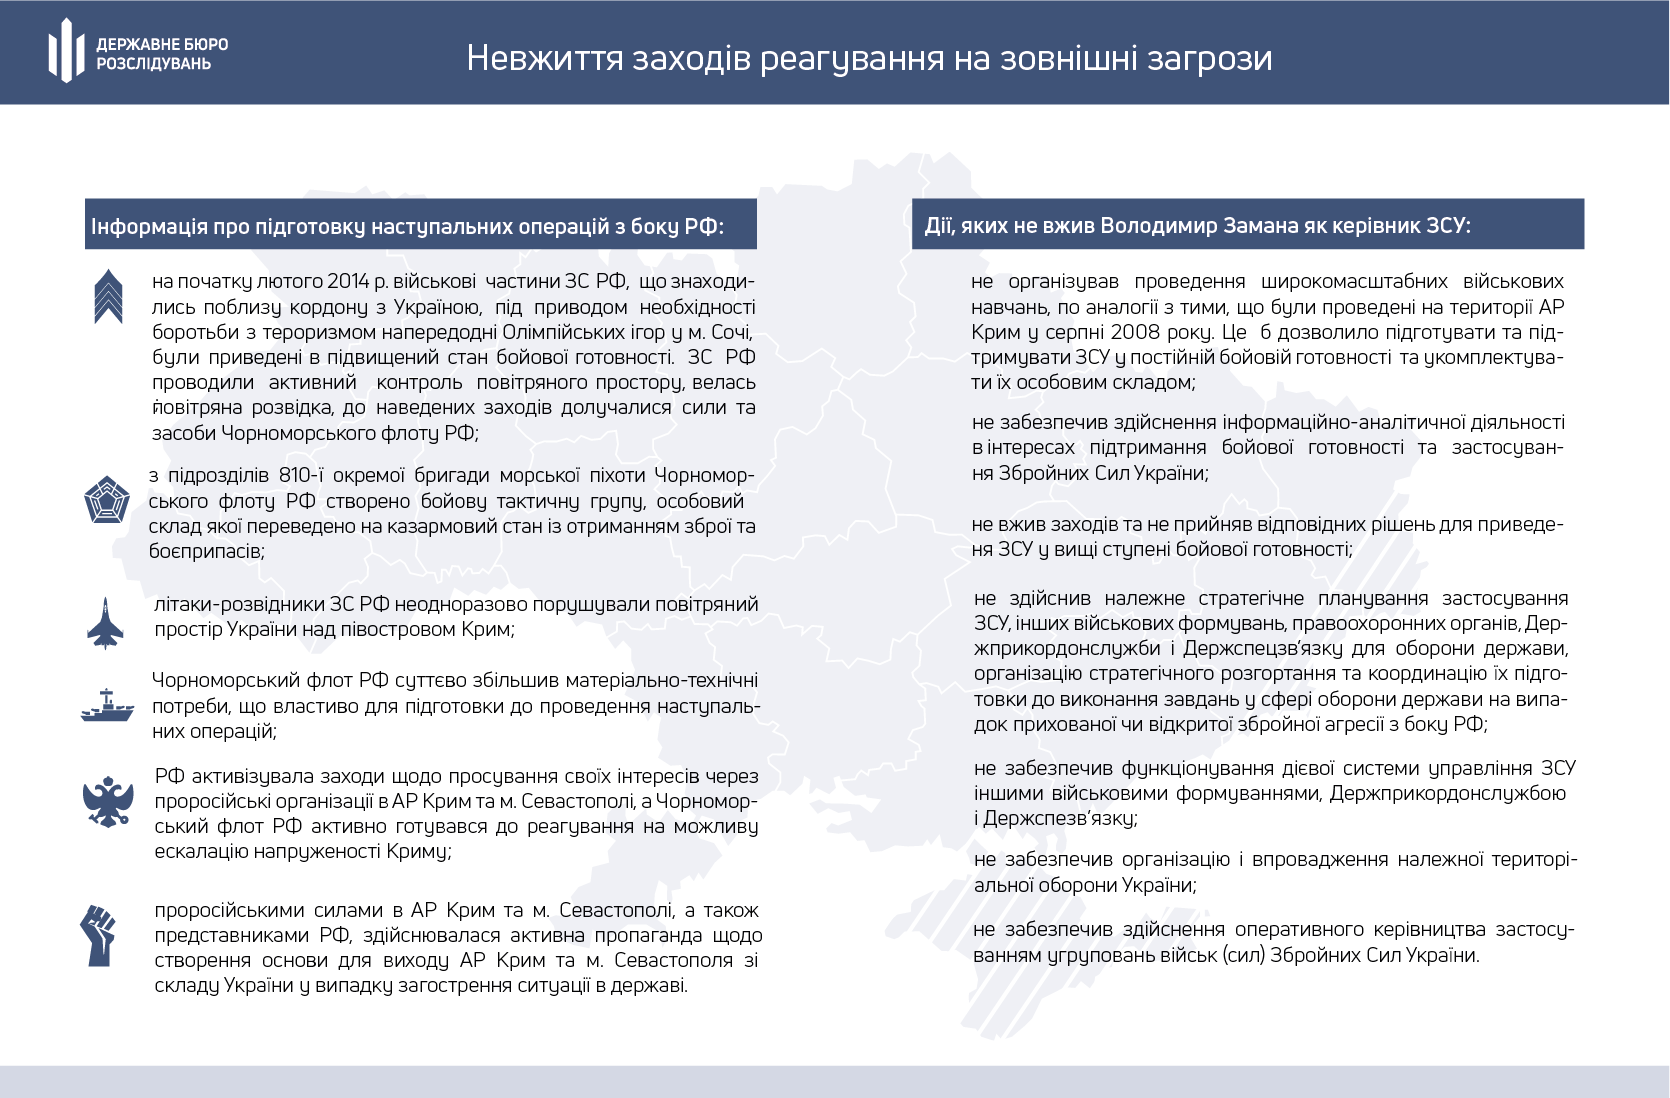 В ГБР рассказали, что позволило России аннексировать Крым. Инфографика - ГБР